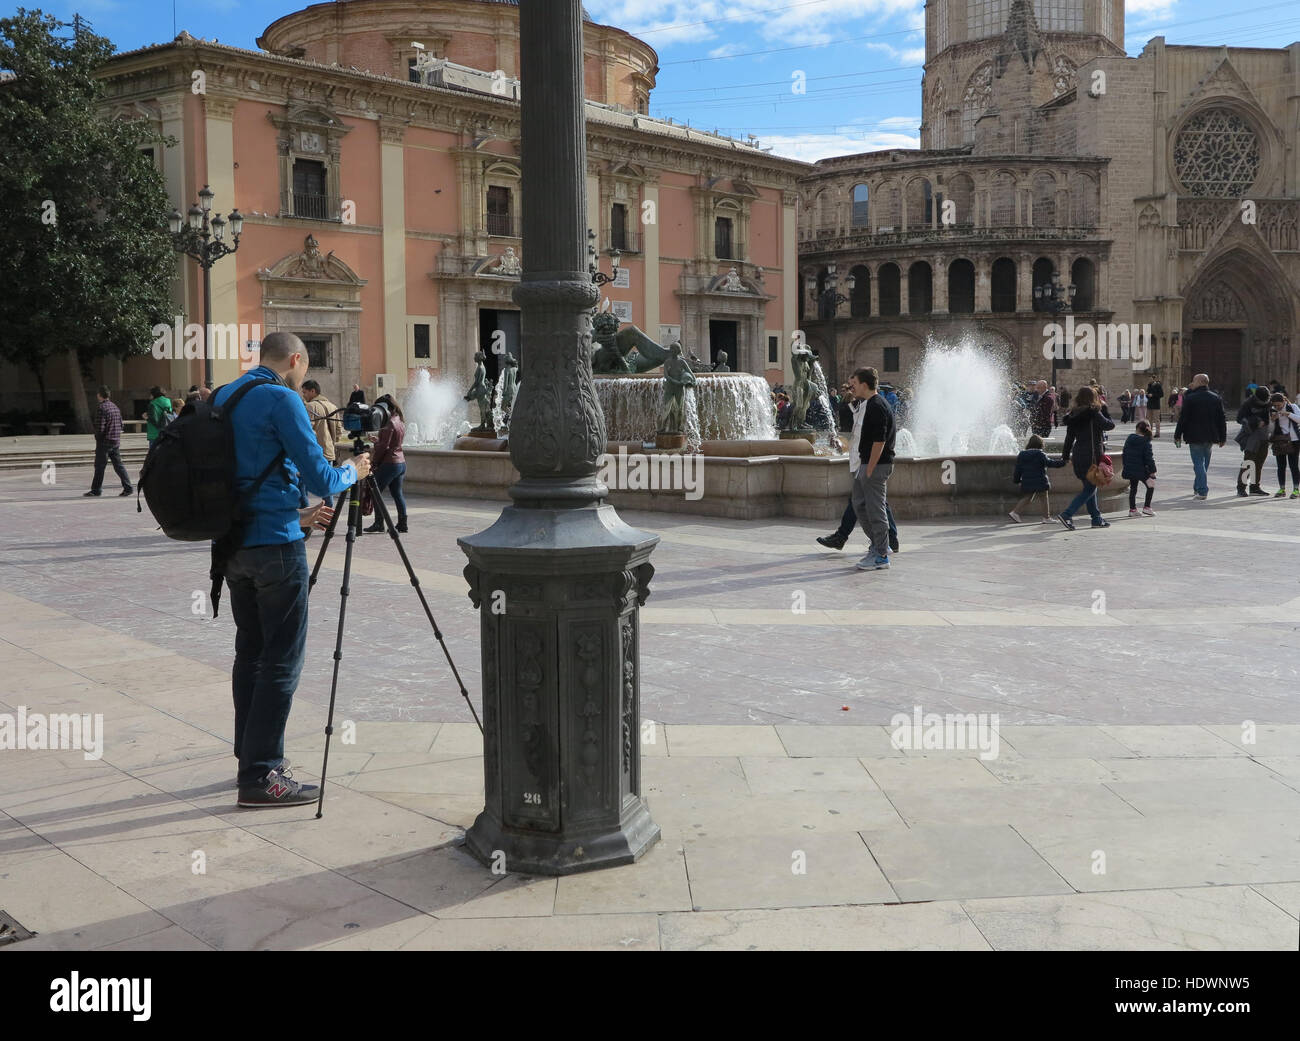 Fotógrafo que fija un trípode y una cámara para fotografiar a turistas en la Fuente de Turia en la Plaza de la Virgen, Valencia, España Foto de stock